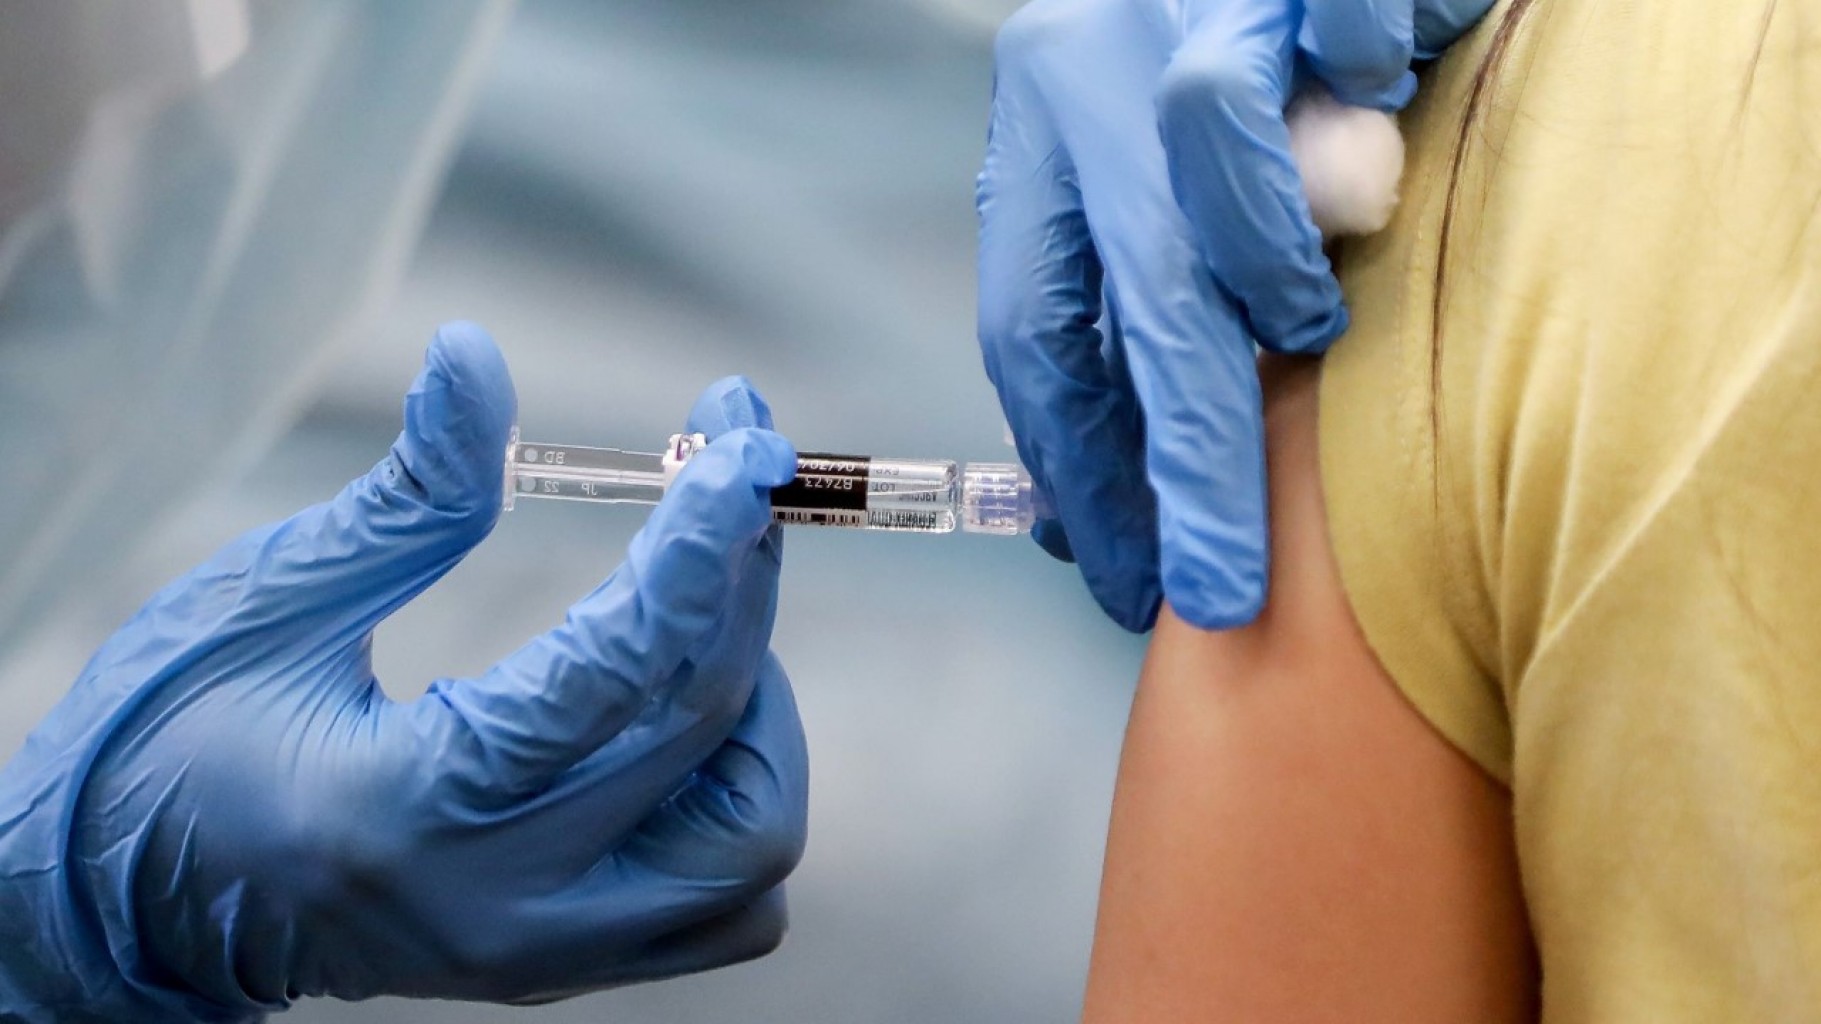 El lanzamiento de la vacuna confirma las advertencias de funcionarios de salud pública